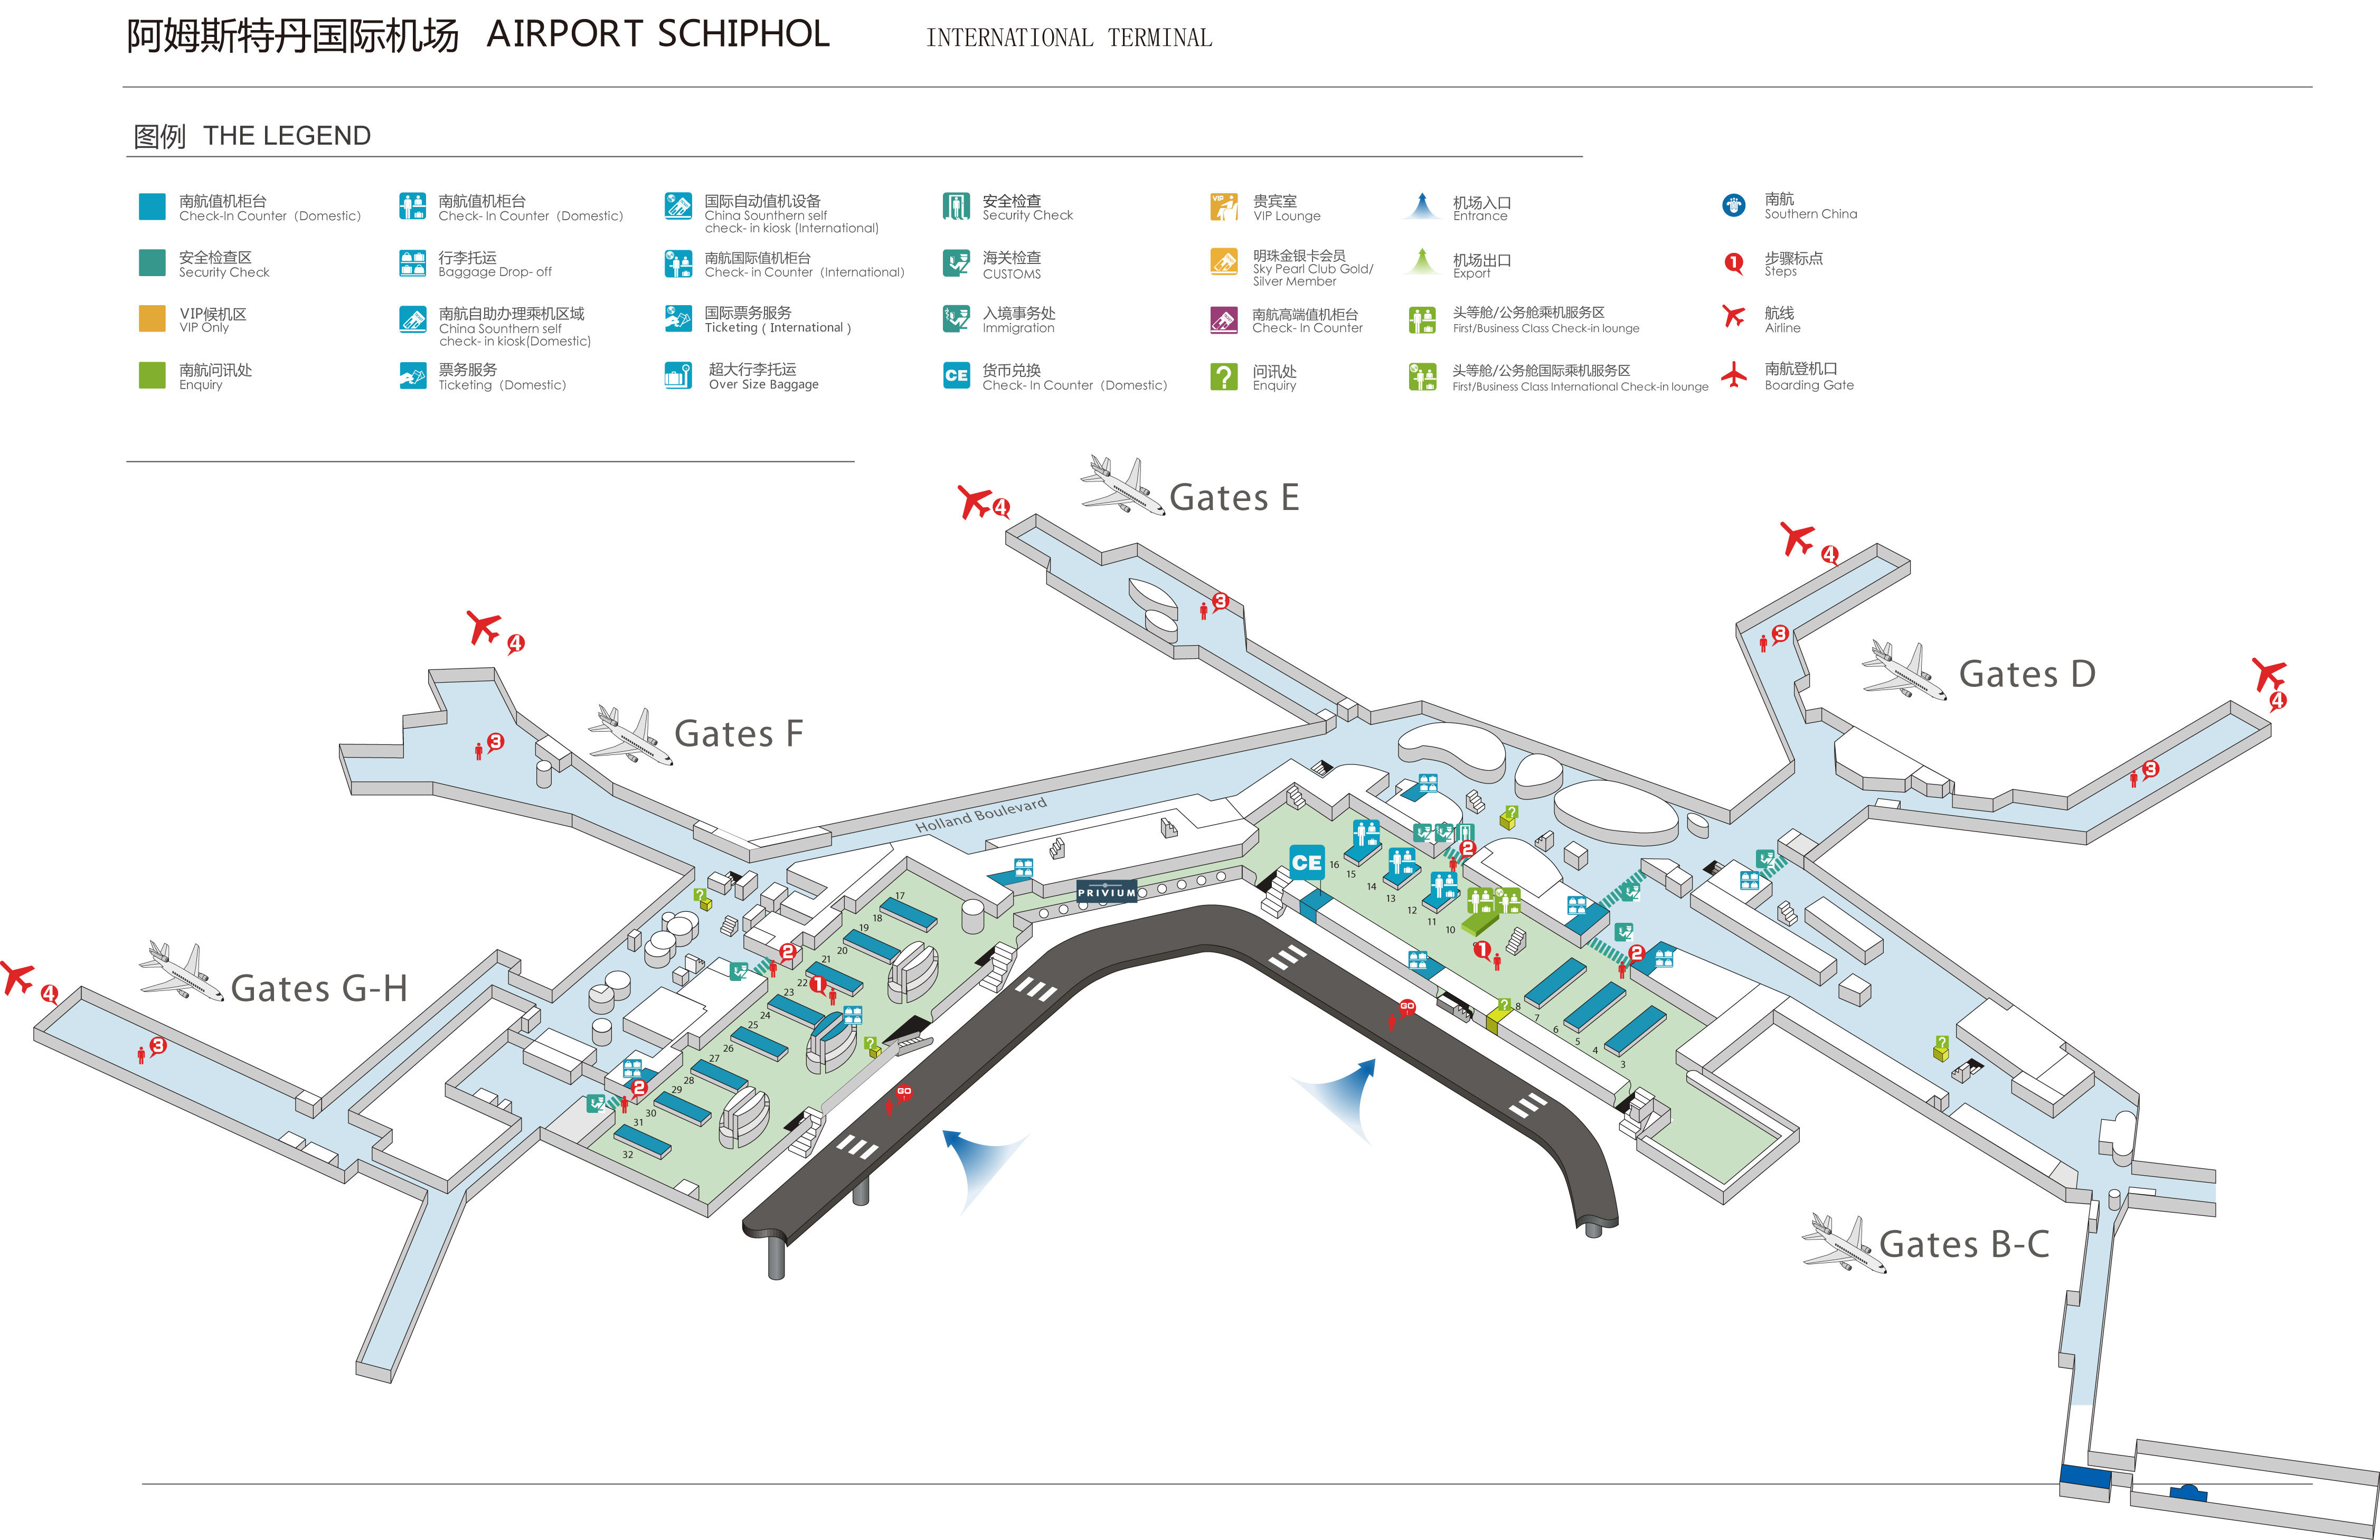 韩国仁川机场欲成为东北亚枢纽 加紧开拓中国等市场 - 航空要闻 - 航空圈——航空信息、大数据平台